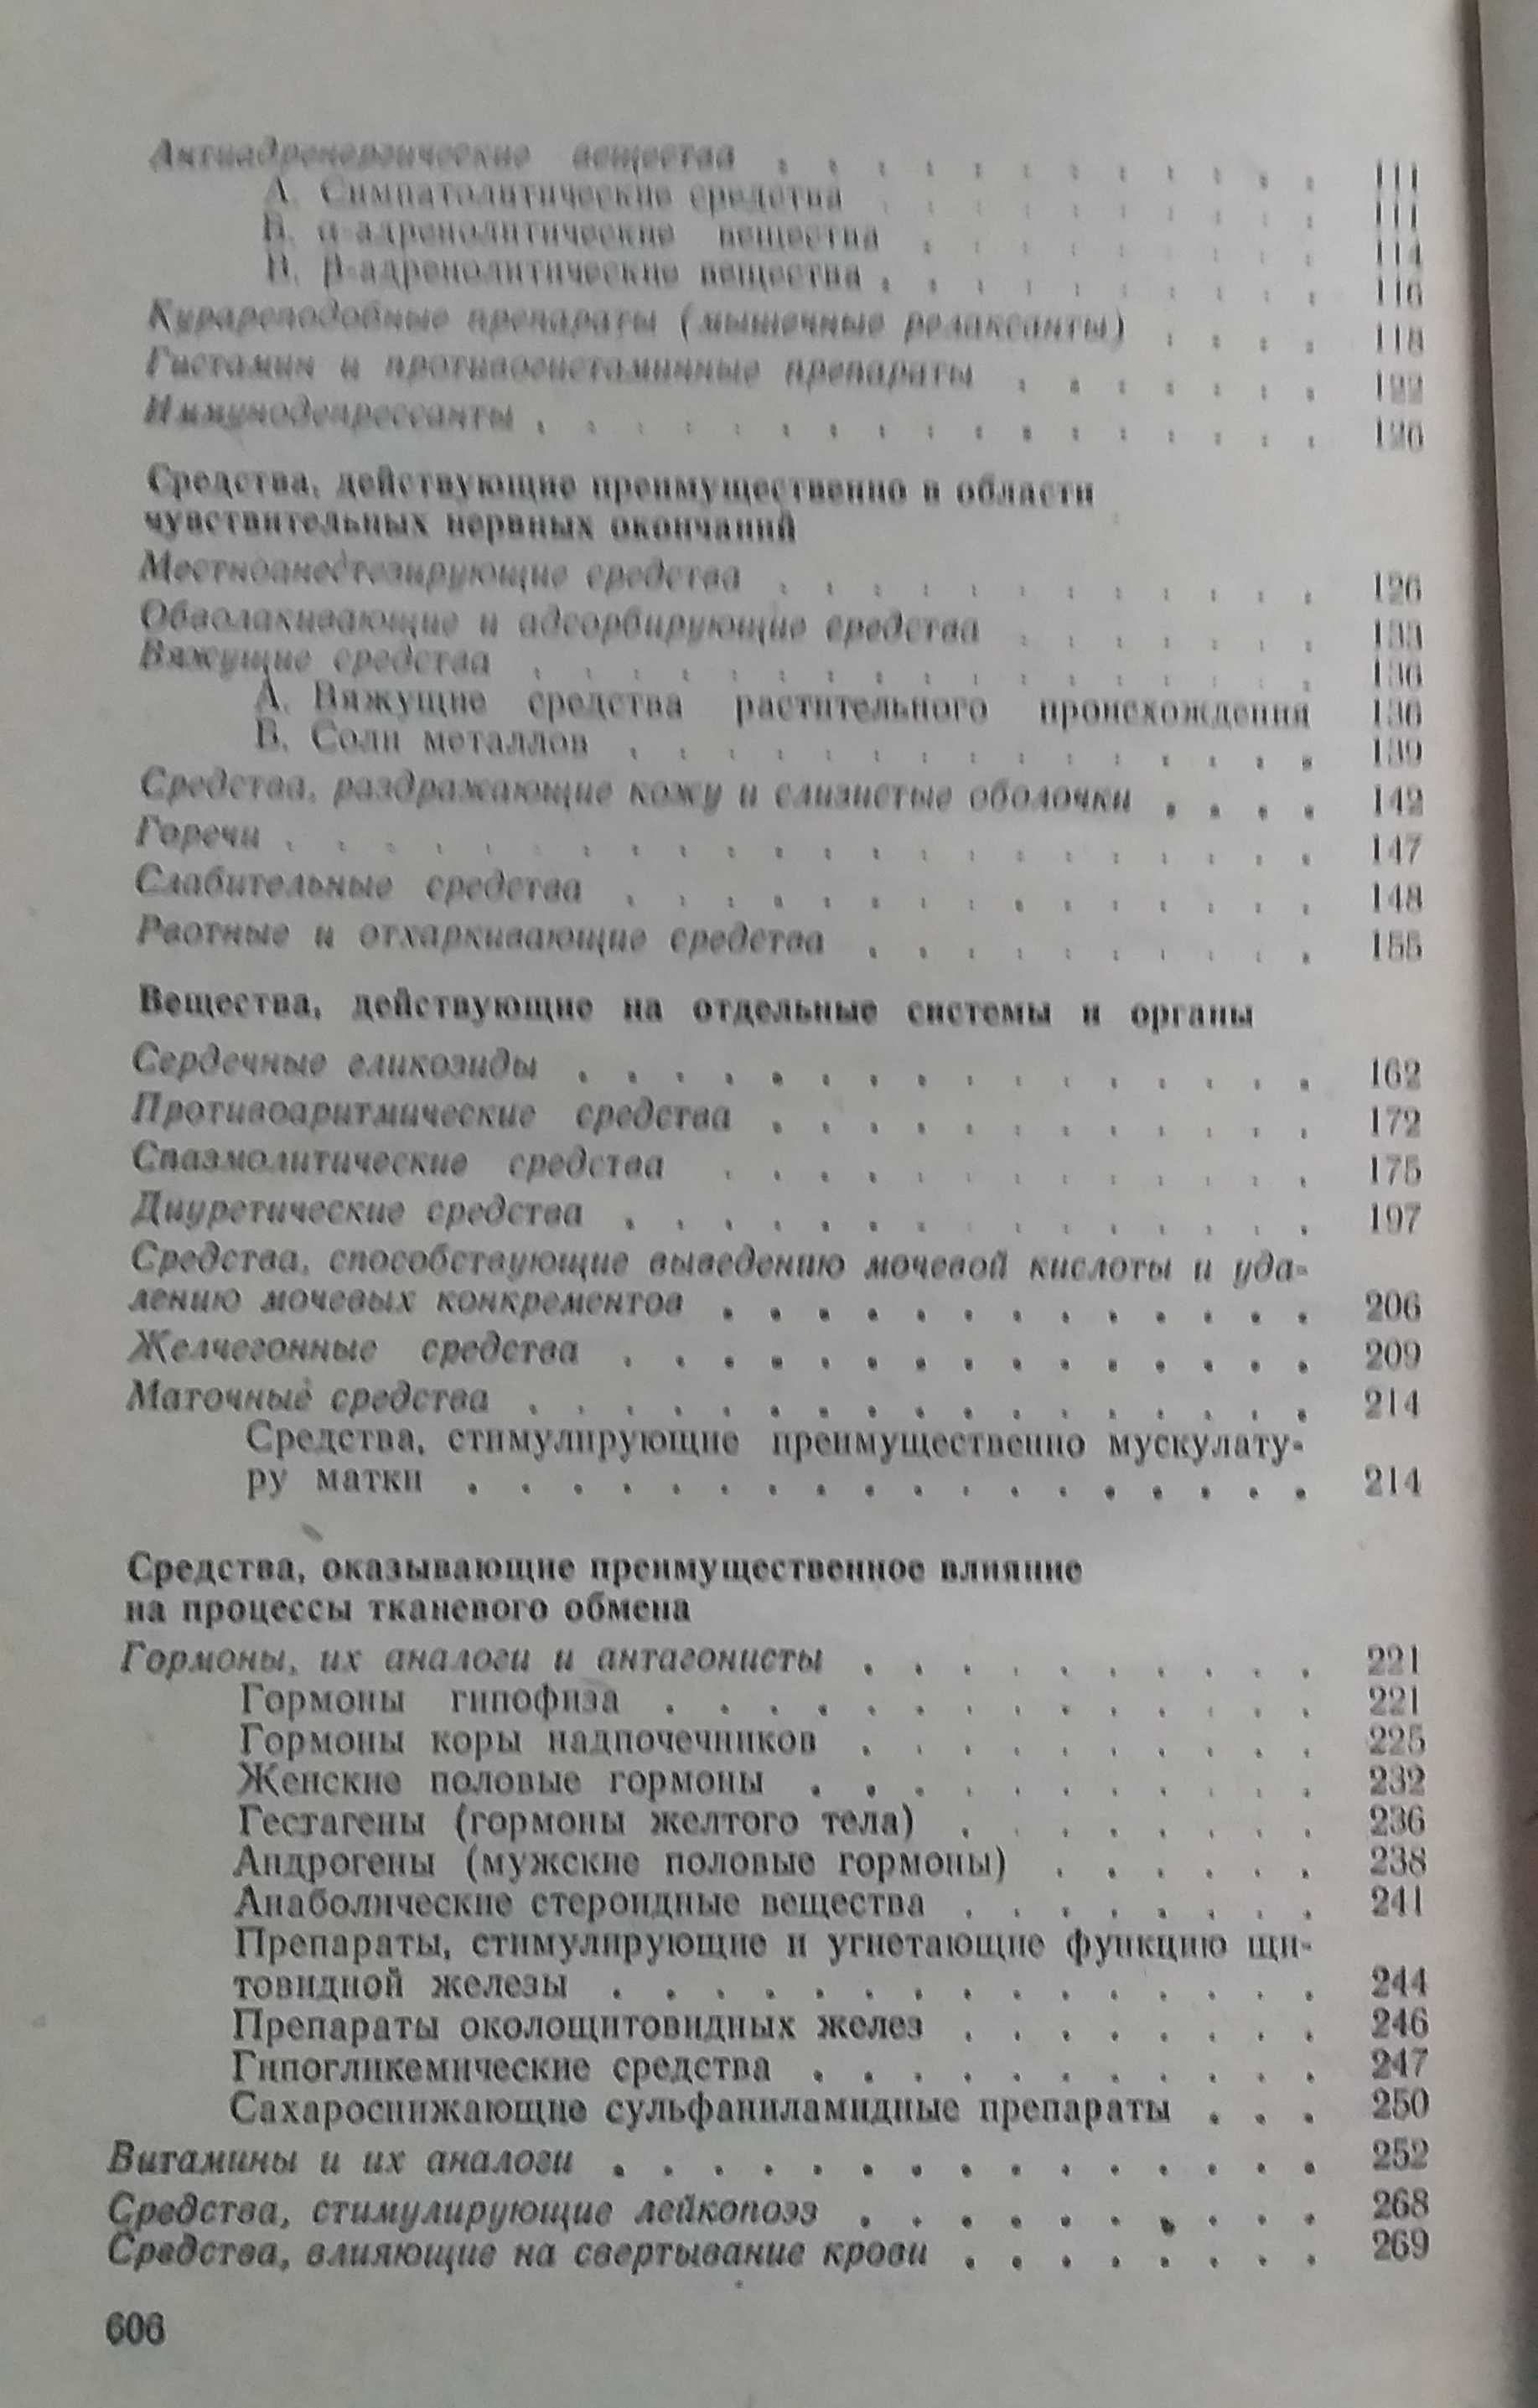 Фармакотерапевтический справочник. Триниус Ф.П. 1979 г.